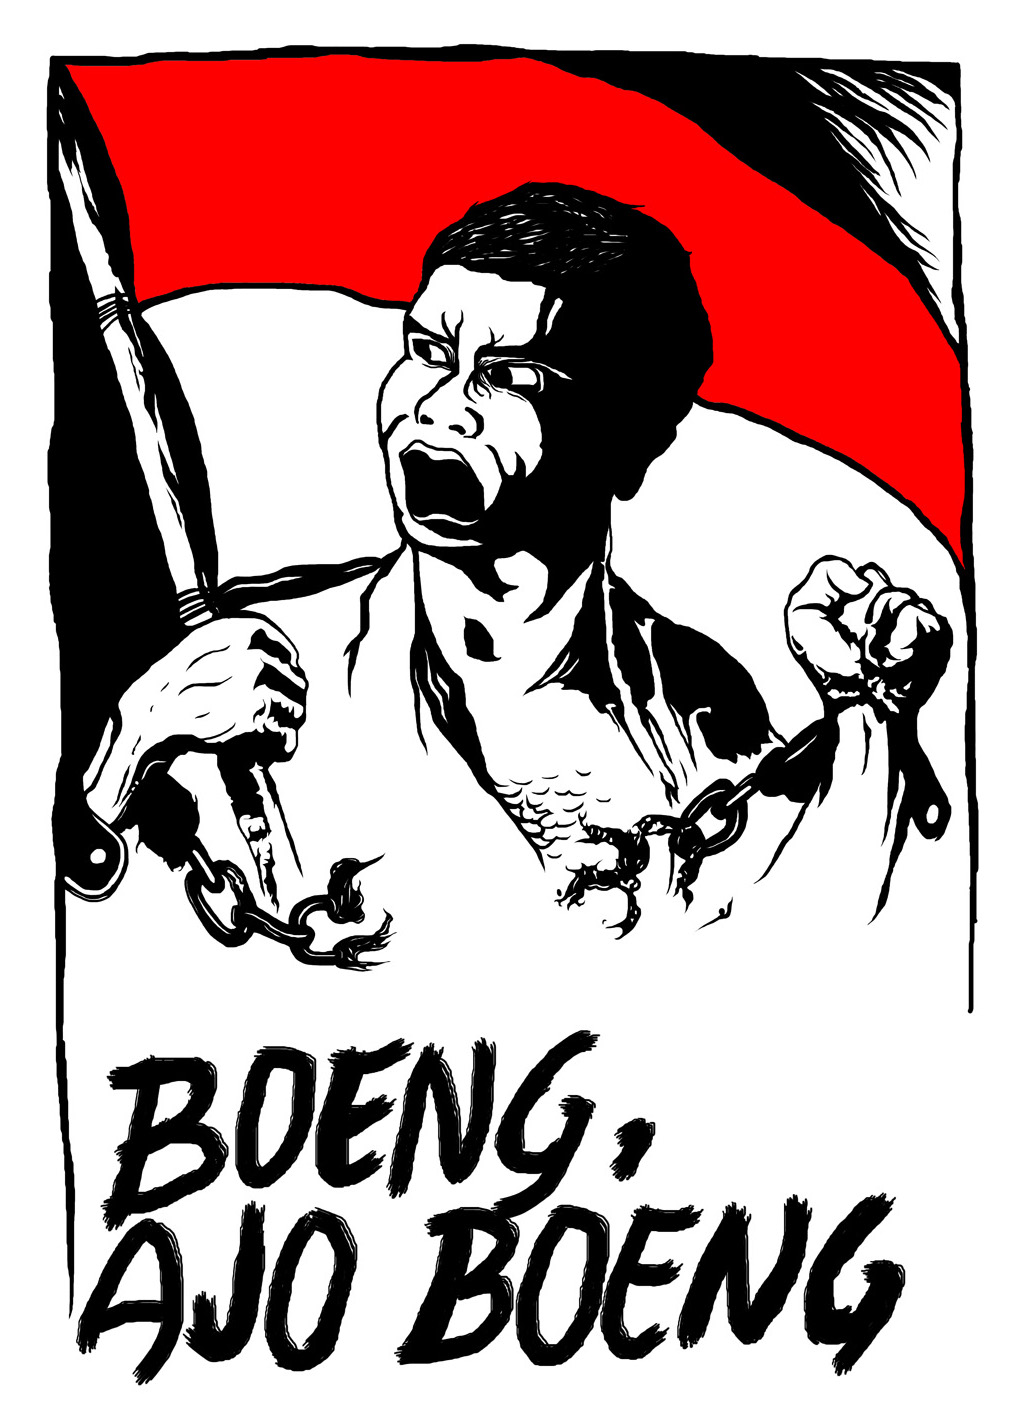 Poster Perjuangan Boeng Ajo Boeng!